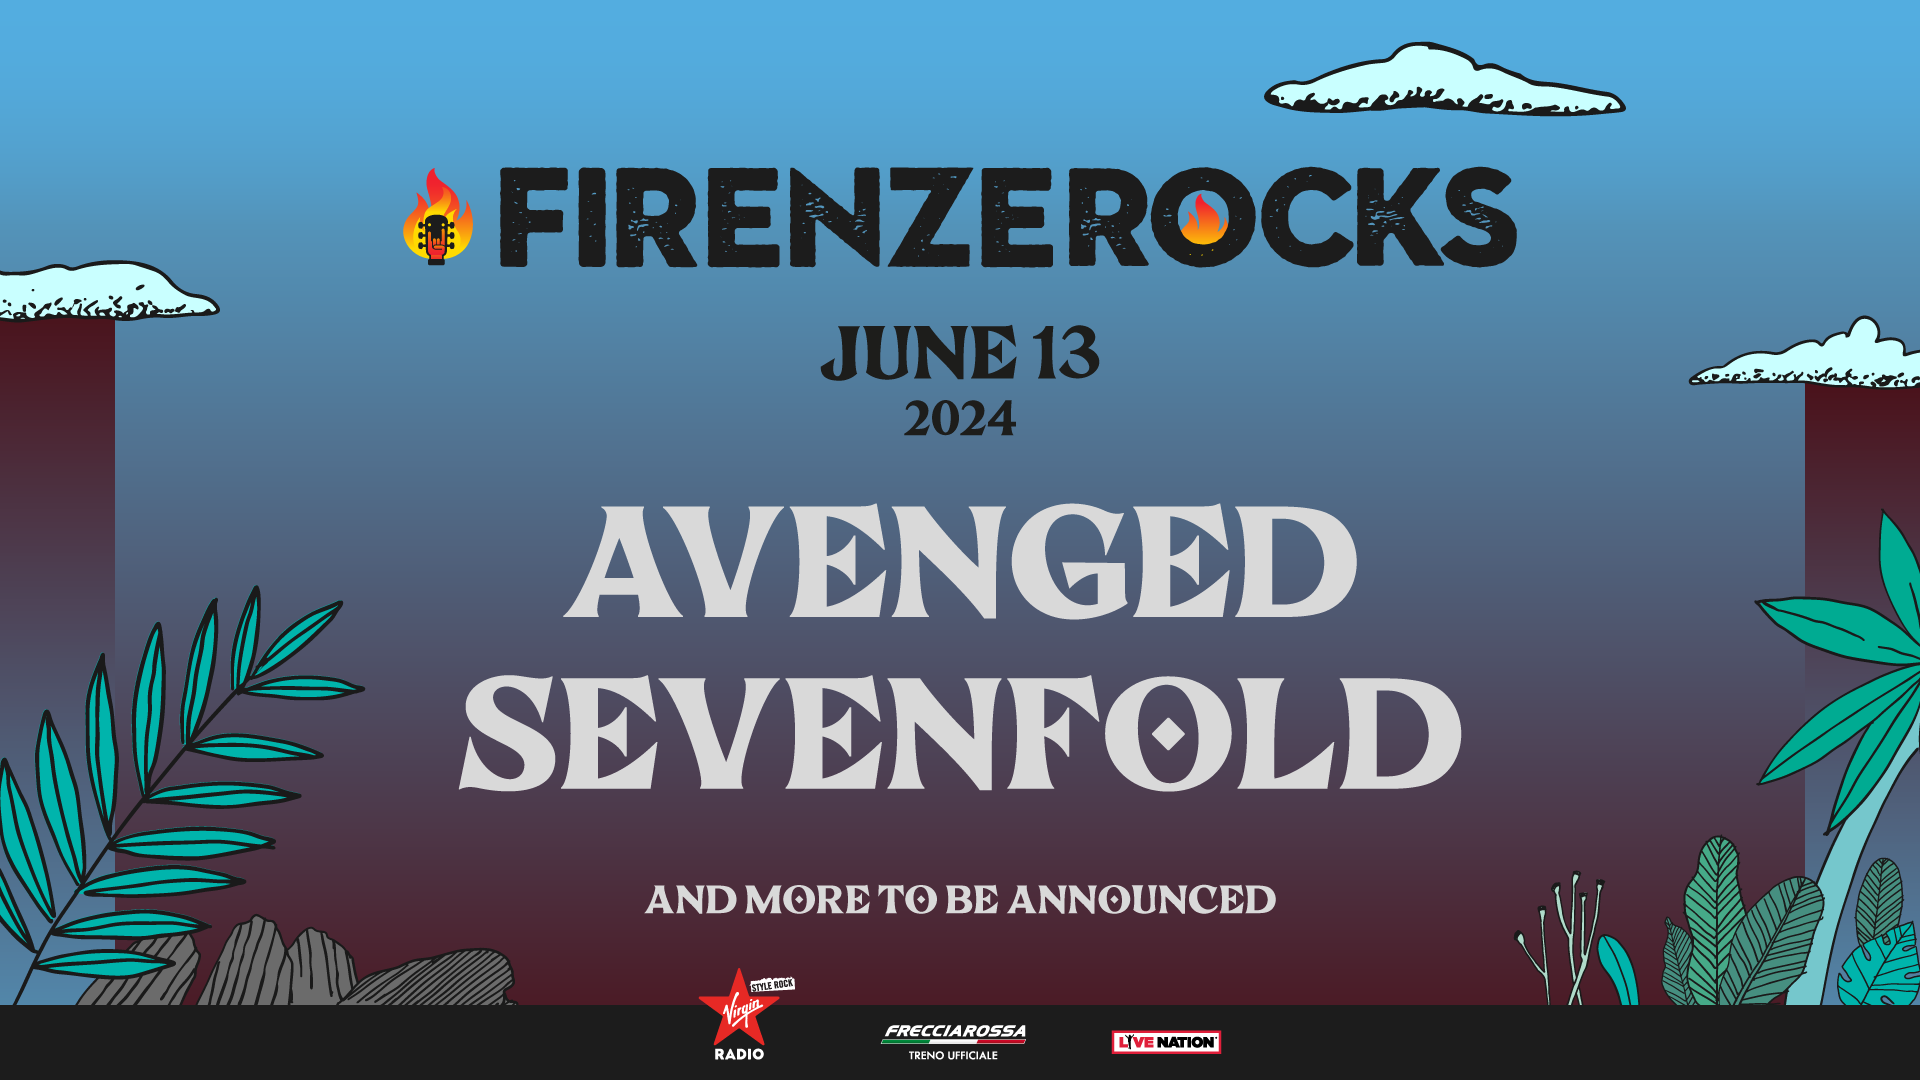 AVENGED SEVENFOLD – giovedì 13 giugno 2024 infiammeranno il pubblico del Firenze Rocks con uno show spettacolare